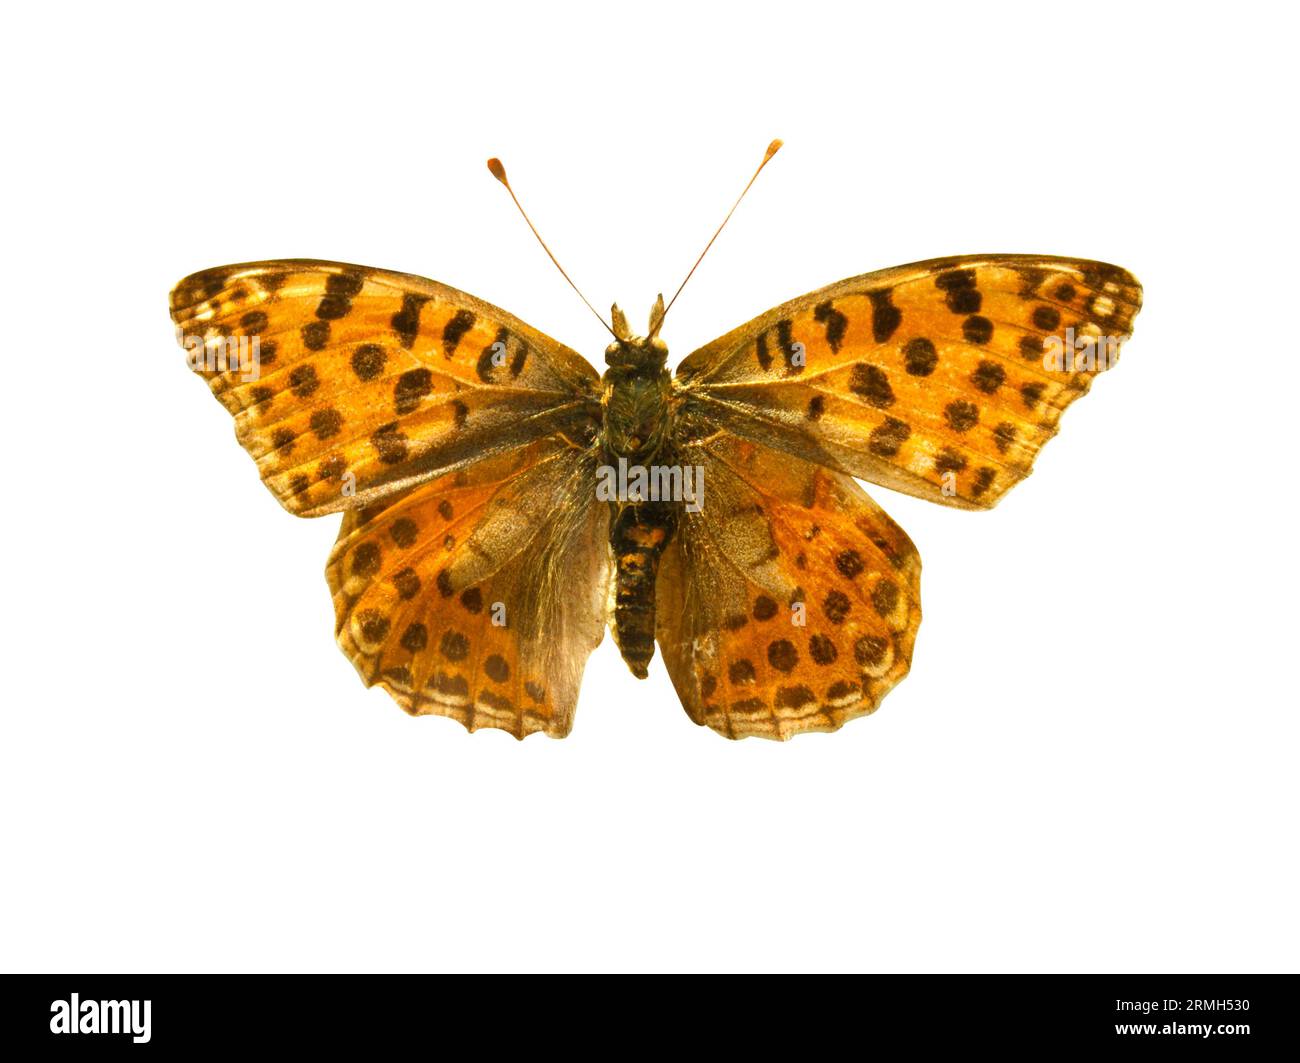 Farfalla arancione con puntini neri e ali aperte in una vista dall'alto come farfalle di insetti volanti. Razza Argynnis niobe isolata su sfondo bianco. Foto Stock